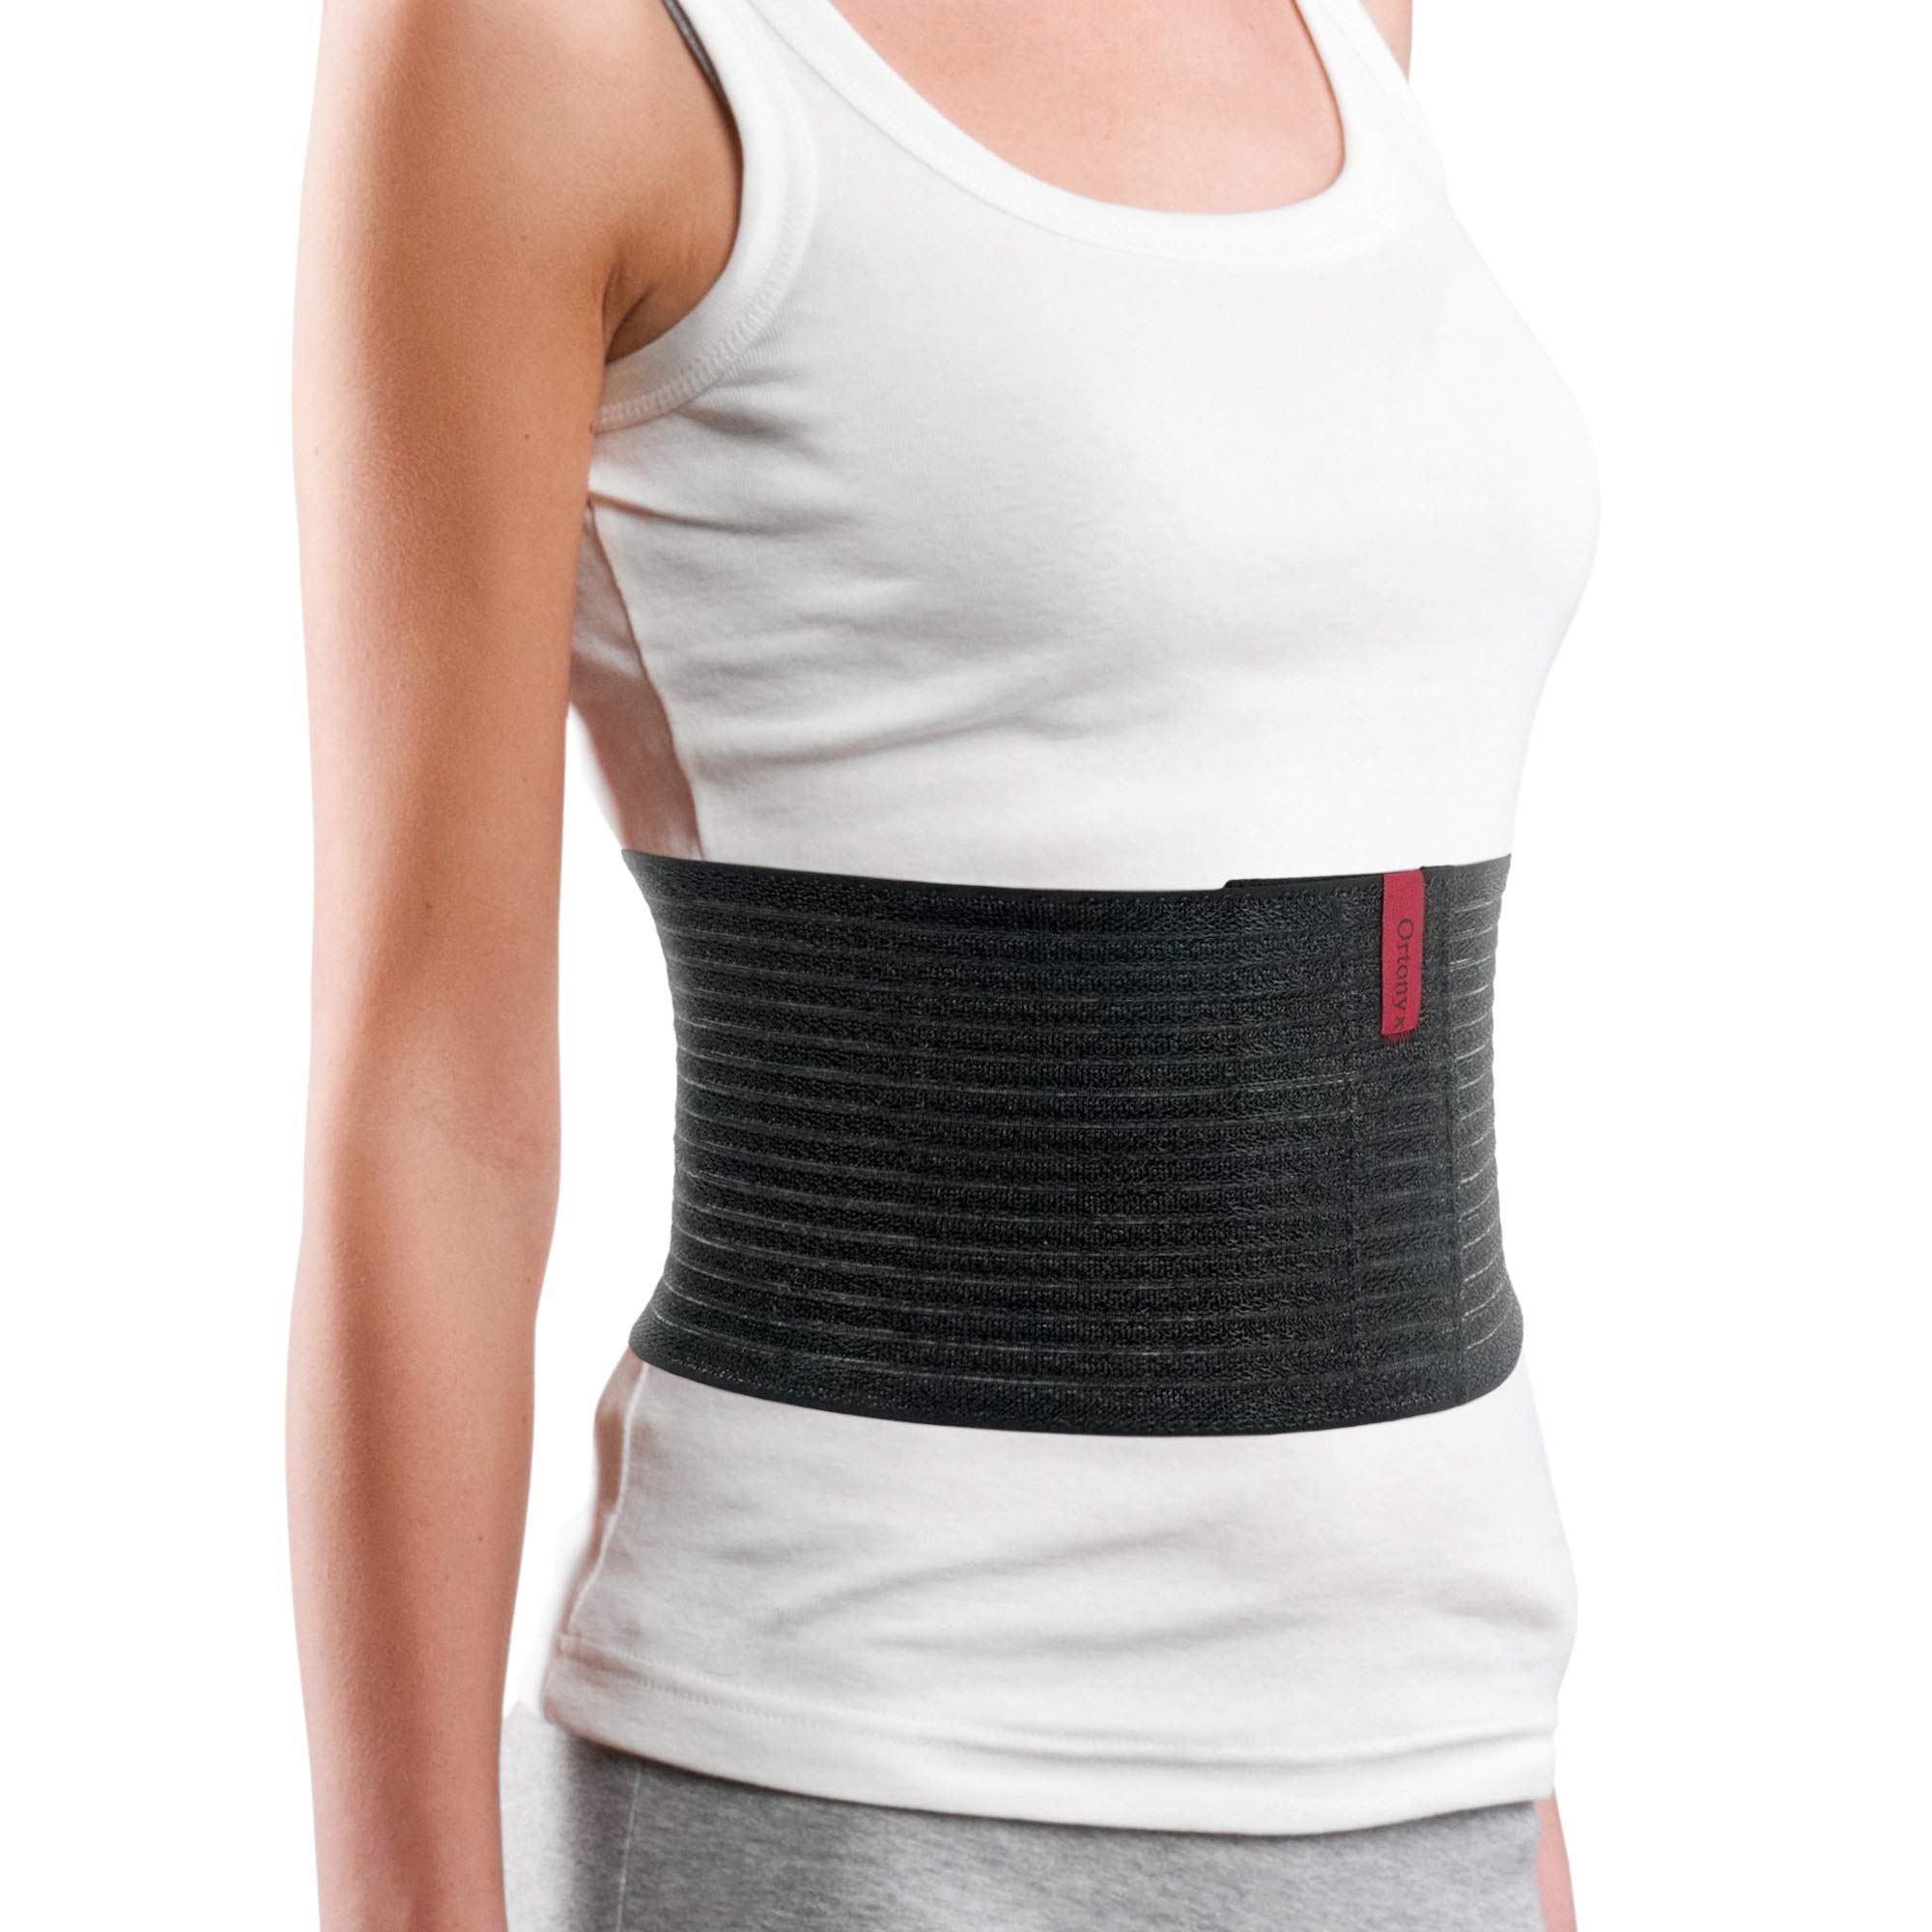 ORTONYX Lumbar Support Belt Lumbo-sacral Back Brace – UFEELGOOD